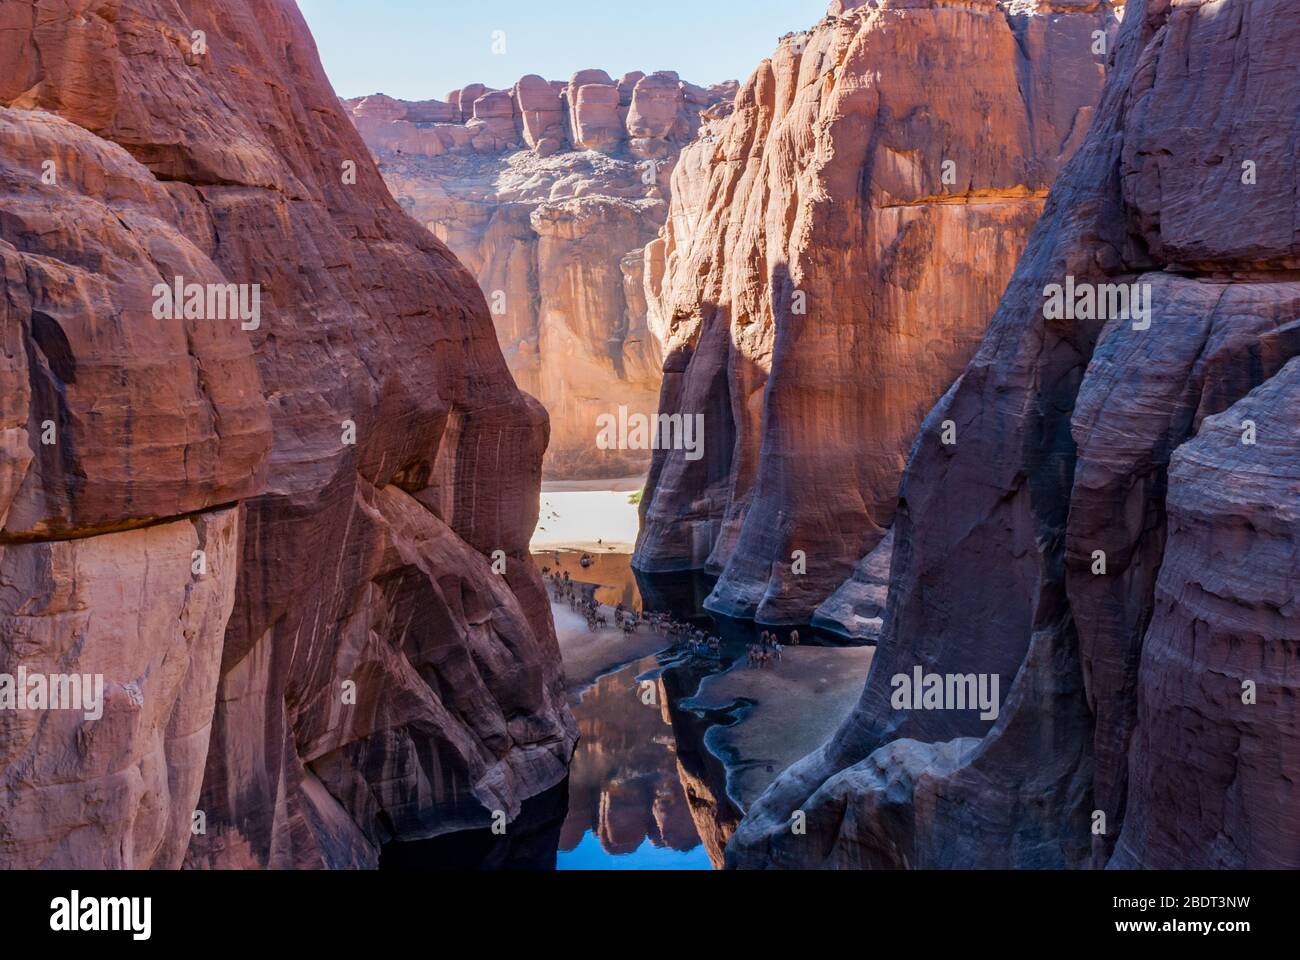 Le trou d'eau Guelta d'Archei près d'oasis, les chameaux qui traînent le woater, le plateau Ennedi, le Tchad, l'Afrique Banque D'Images